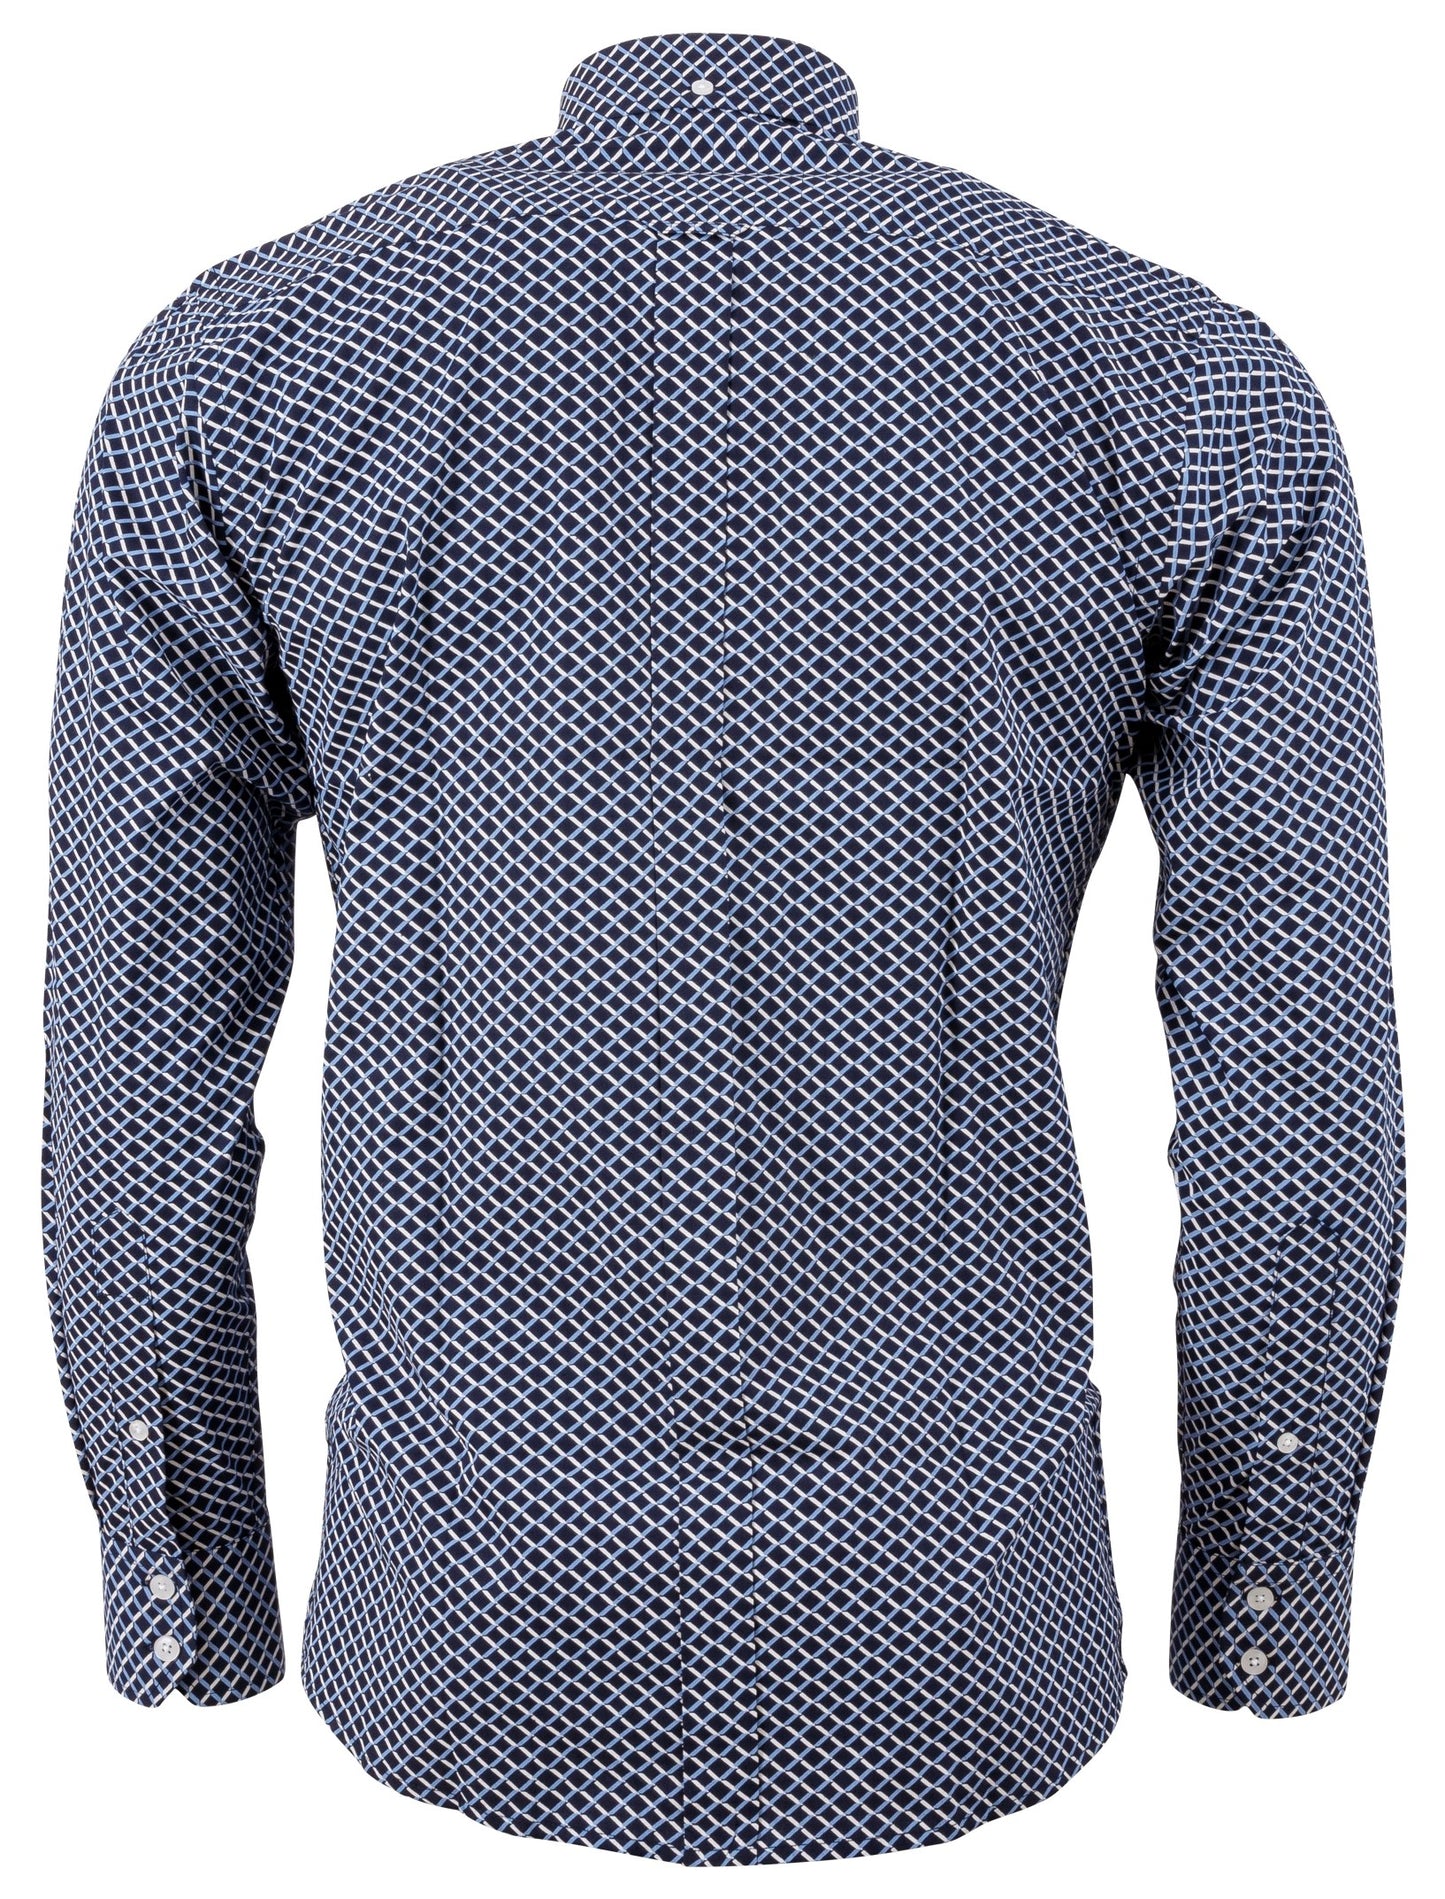 Marineblaues, langärmliges Retro-Mod-Button-Down-Hemd für Herren Relco mit Retro-Print